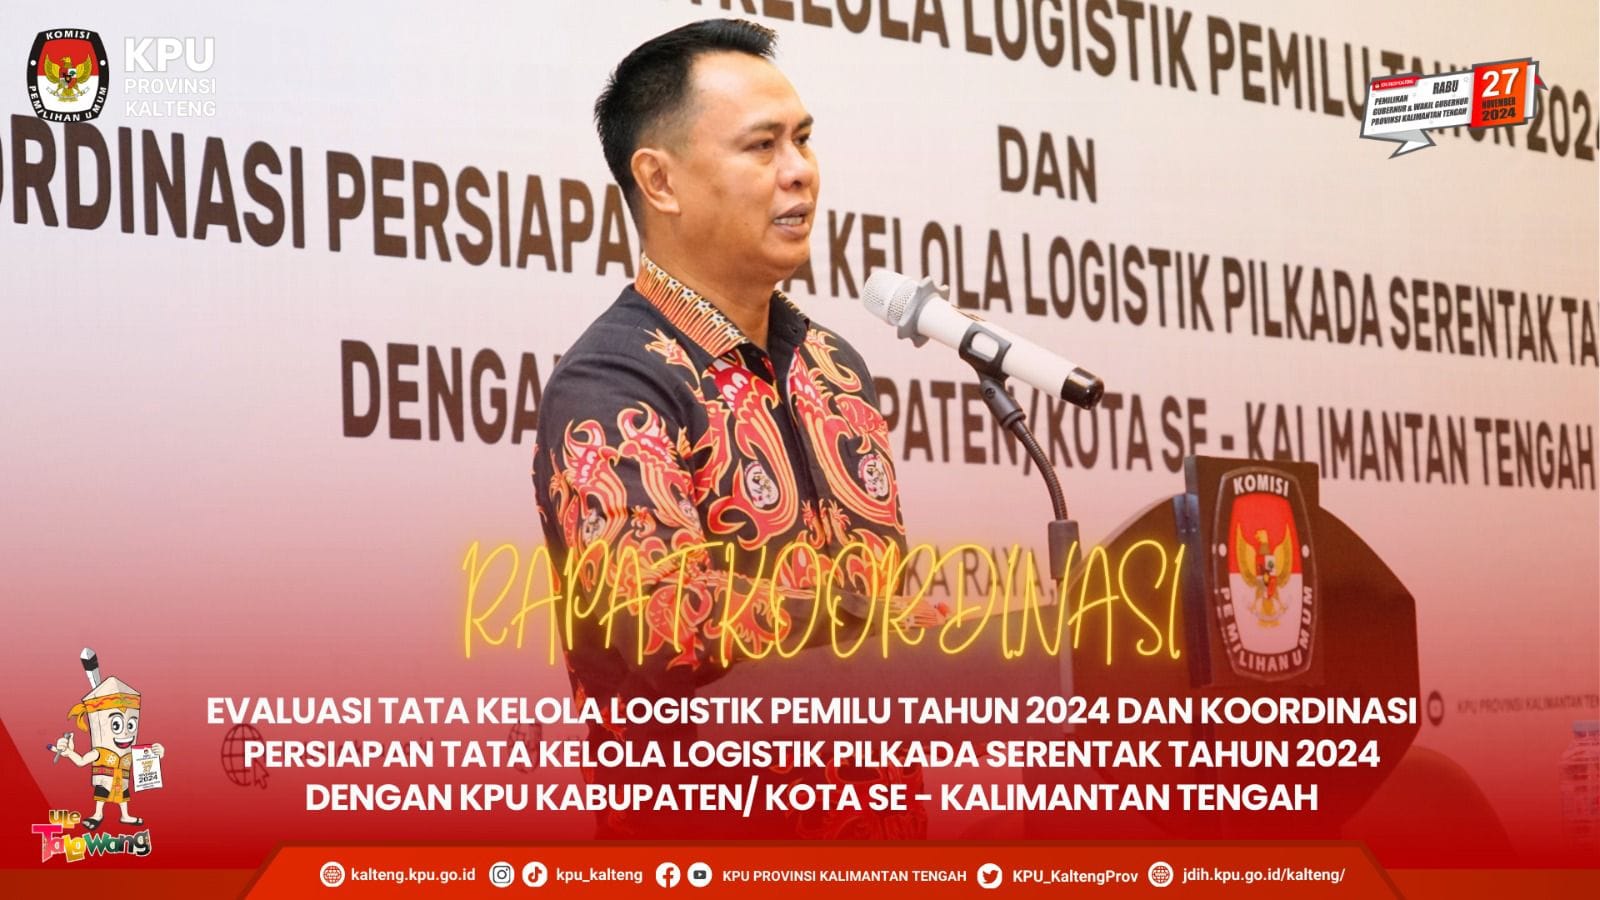 Rakor Evaluasi Tata Kelola Logistik Pemilu dan Persiapan Tata Kelola Logistik Pilkada Tahun 2024